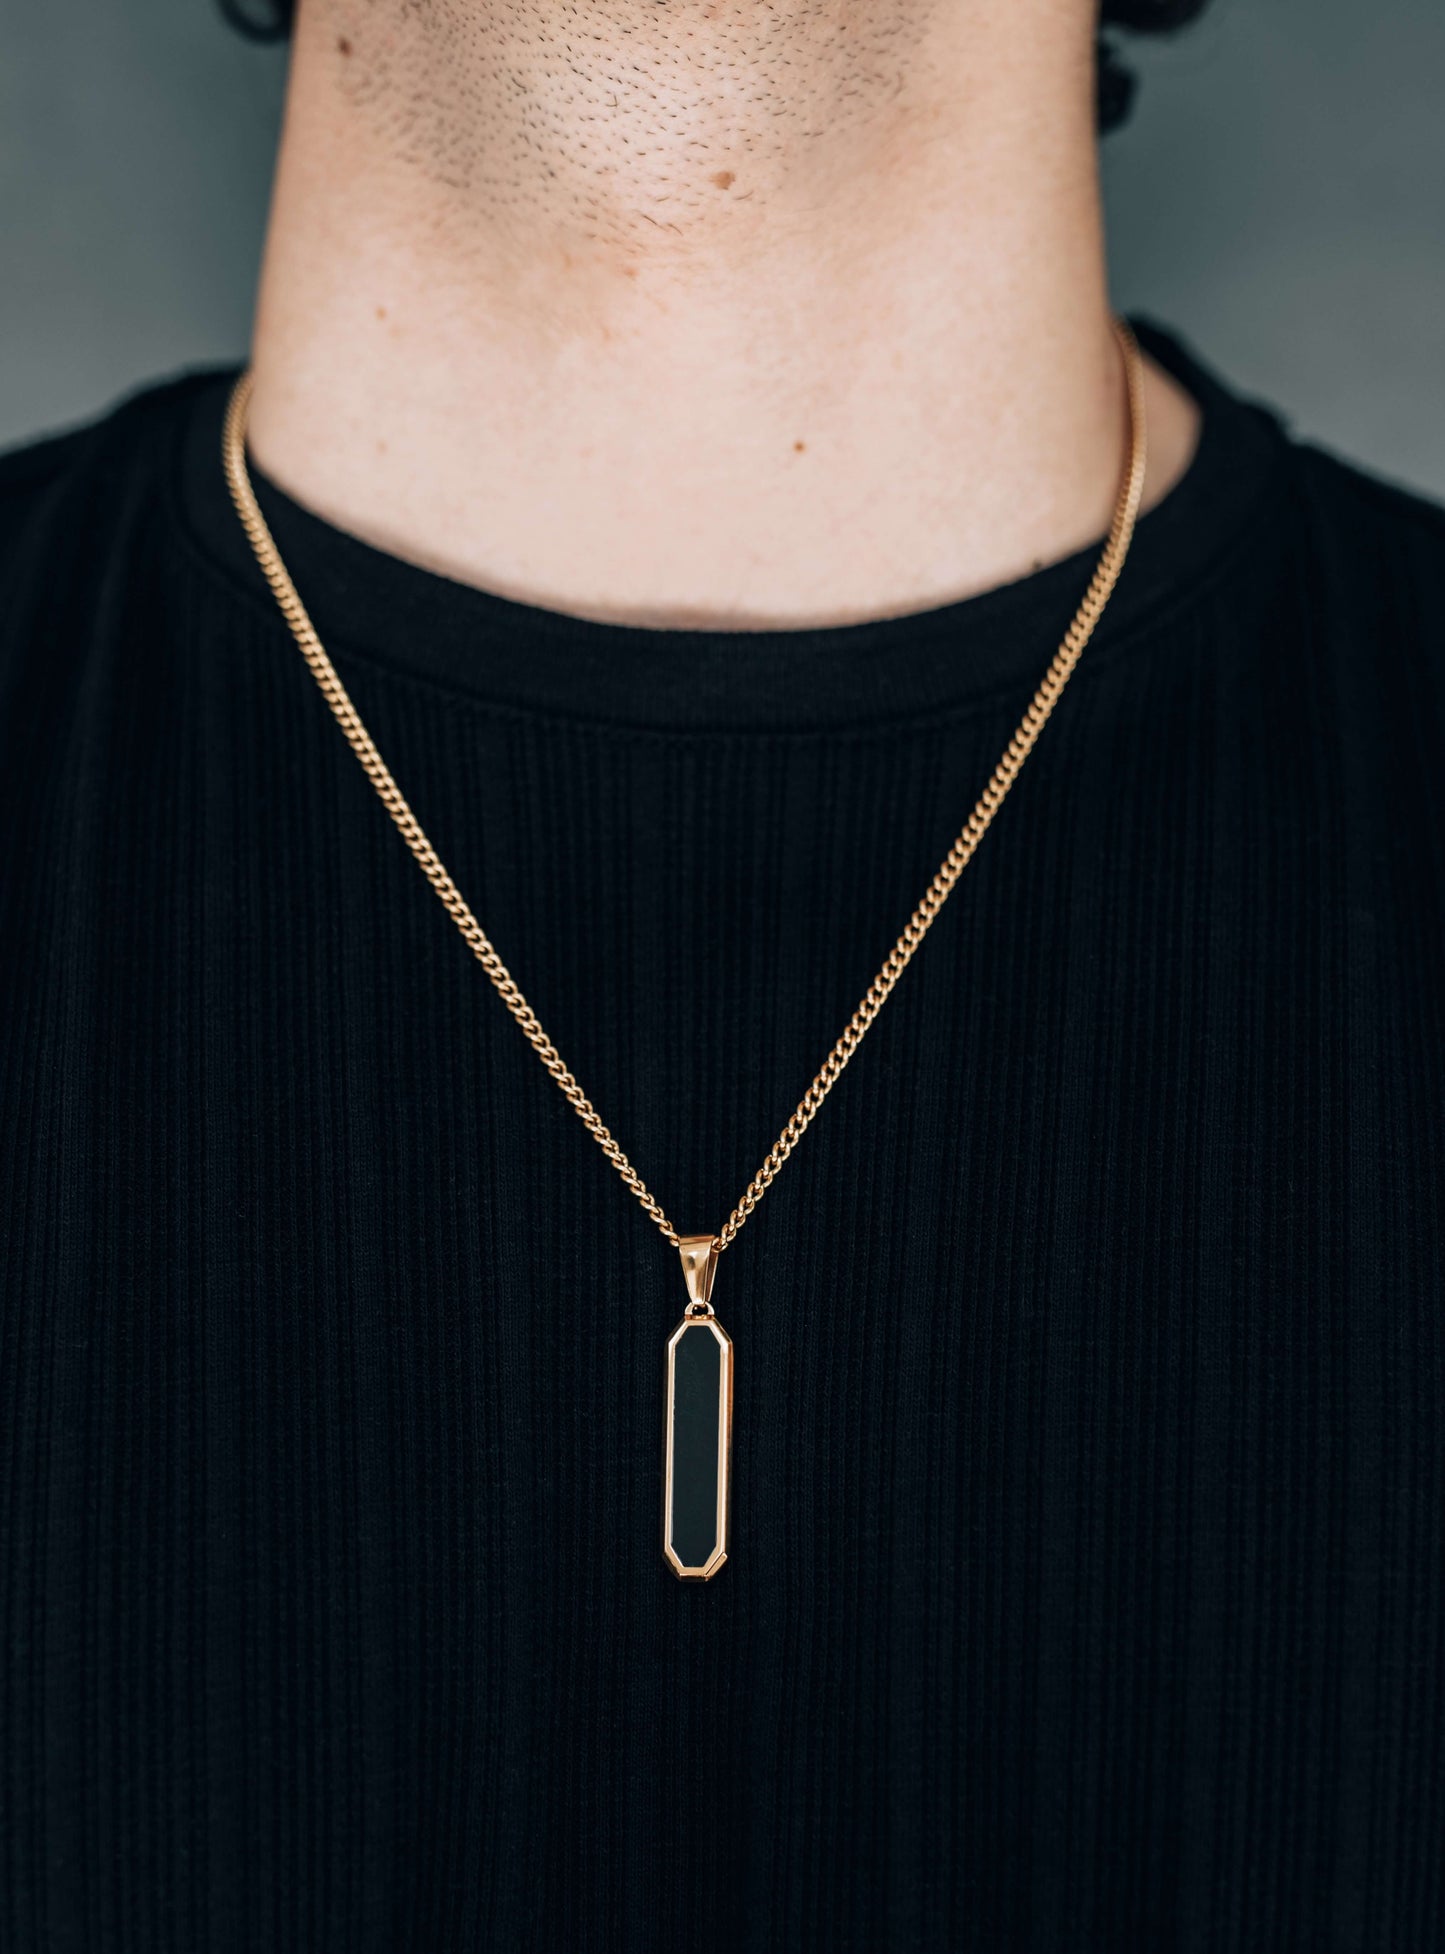 Gold Black Drop Pendant Necklace For Men or Women